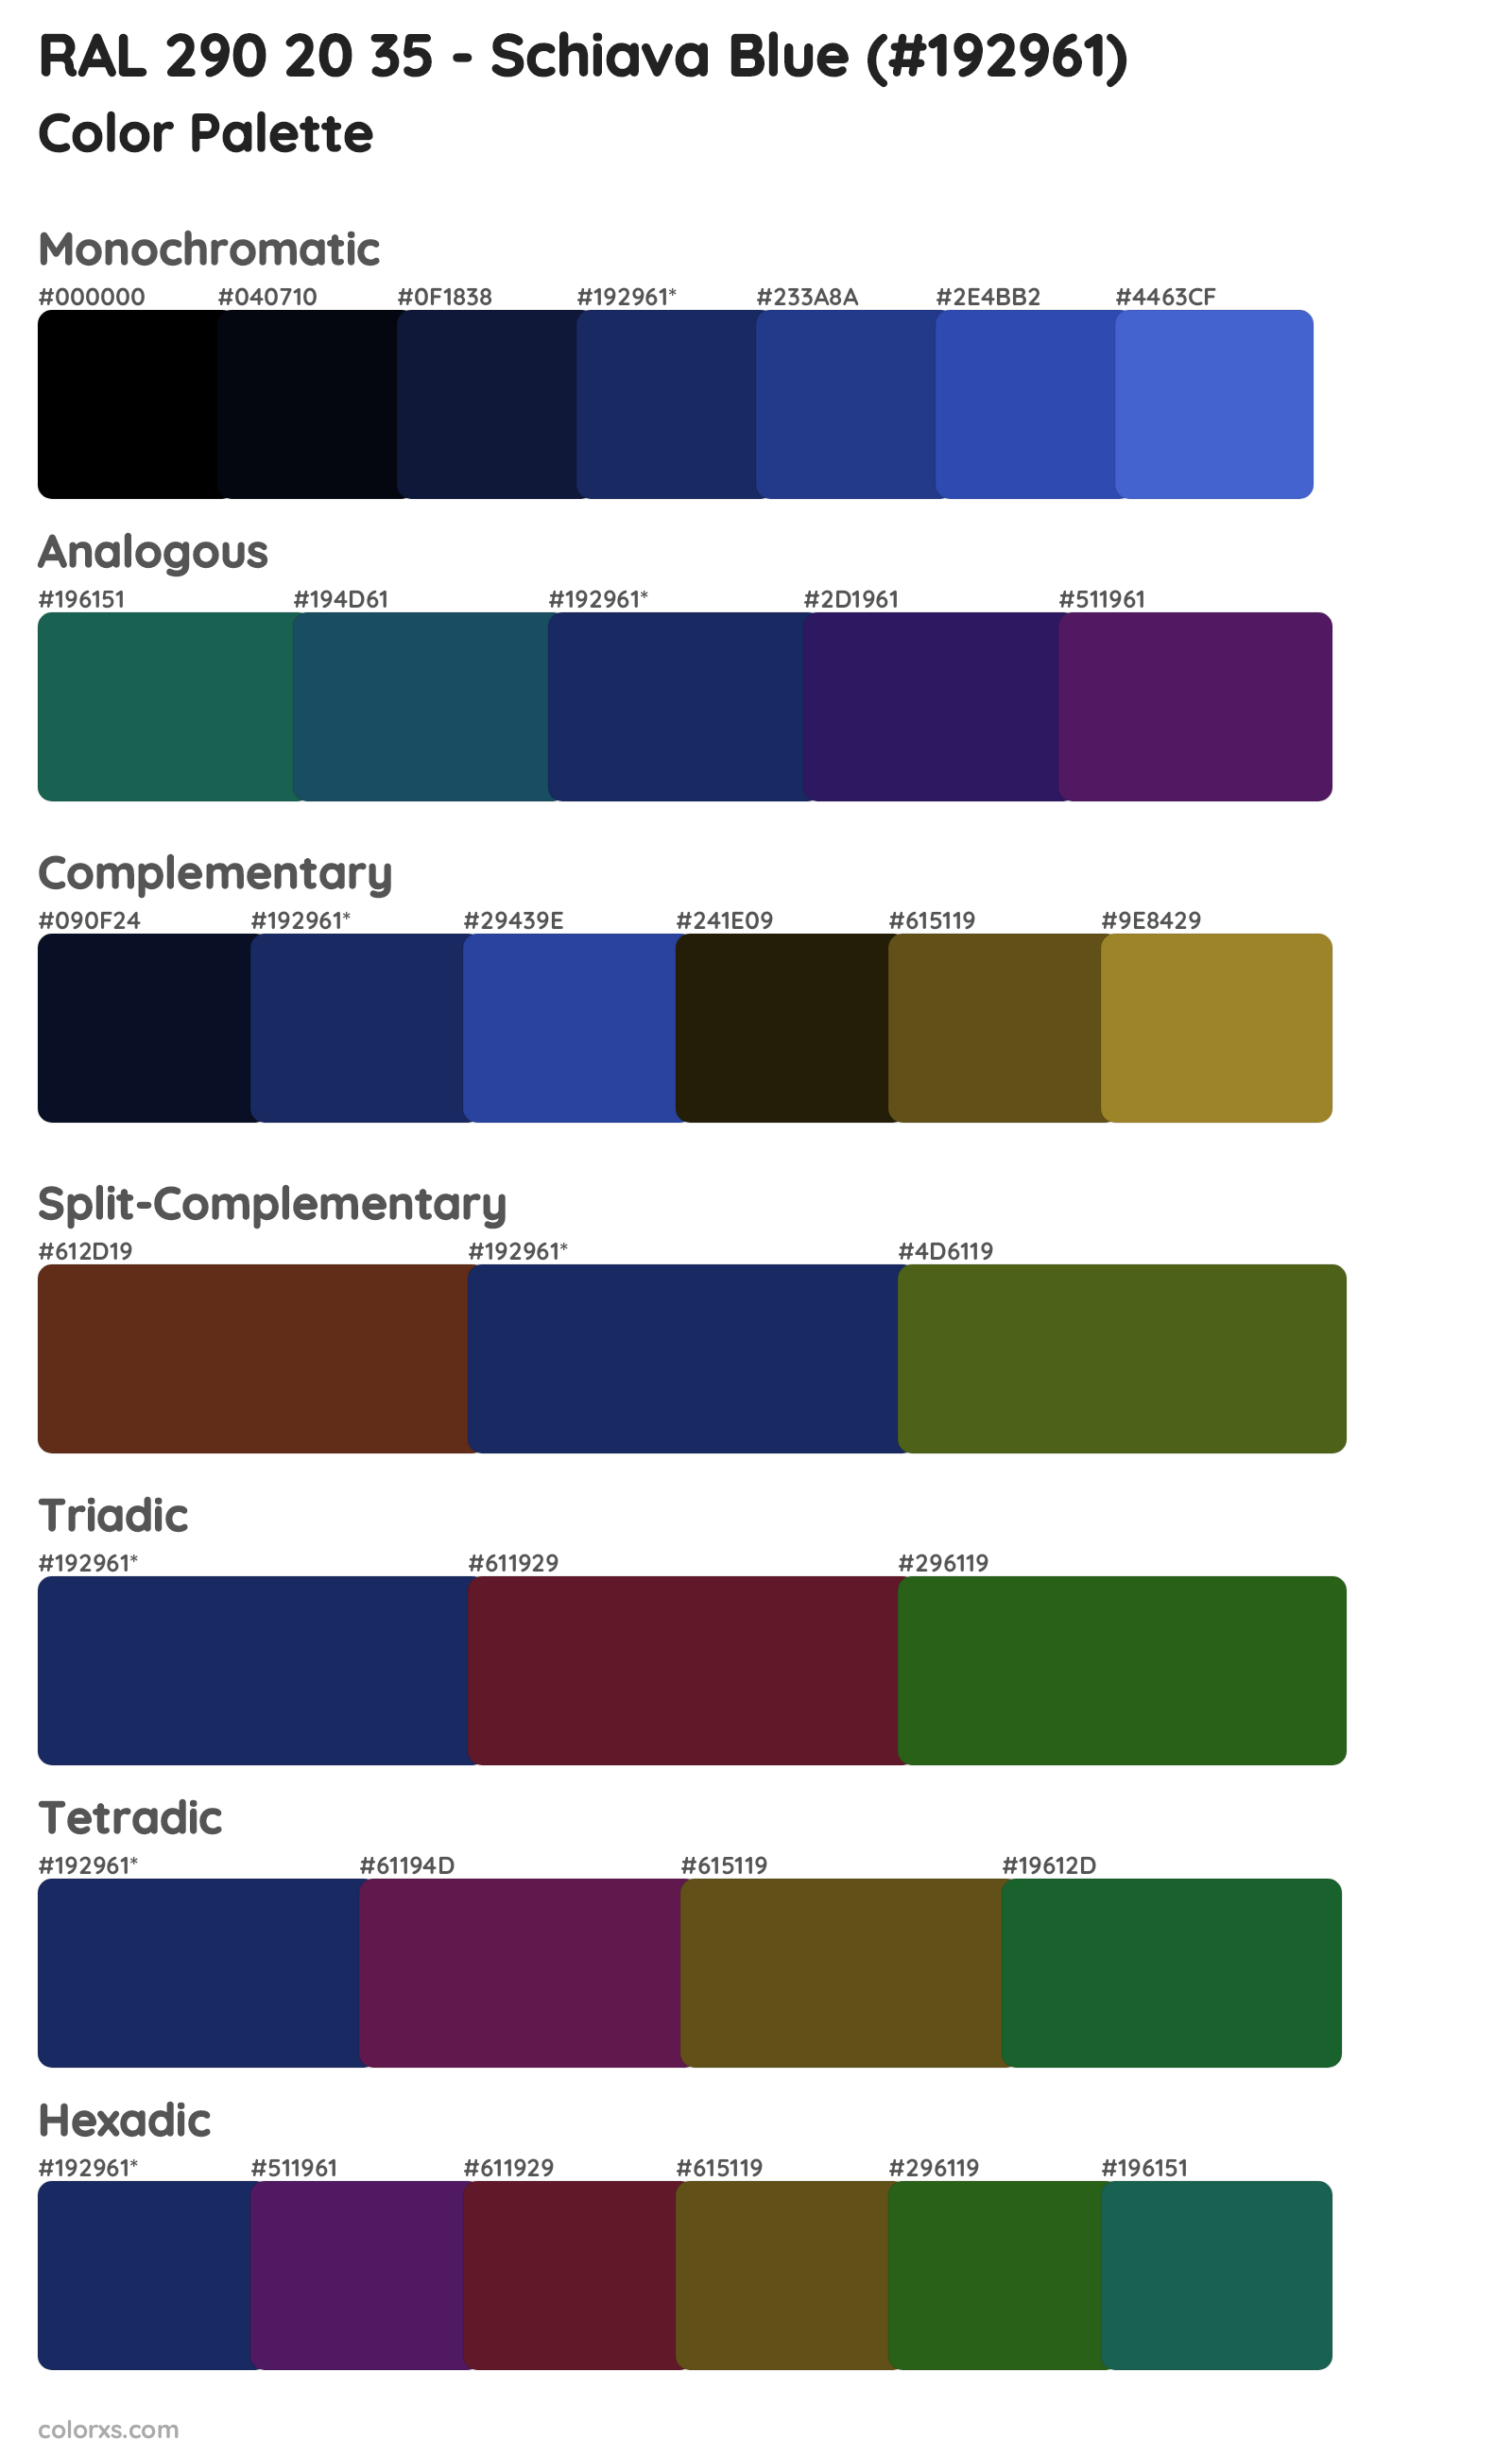 RAL 290 20 35 - Schiava Blue Color Scheme Palettes